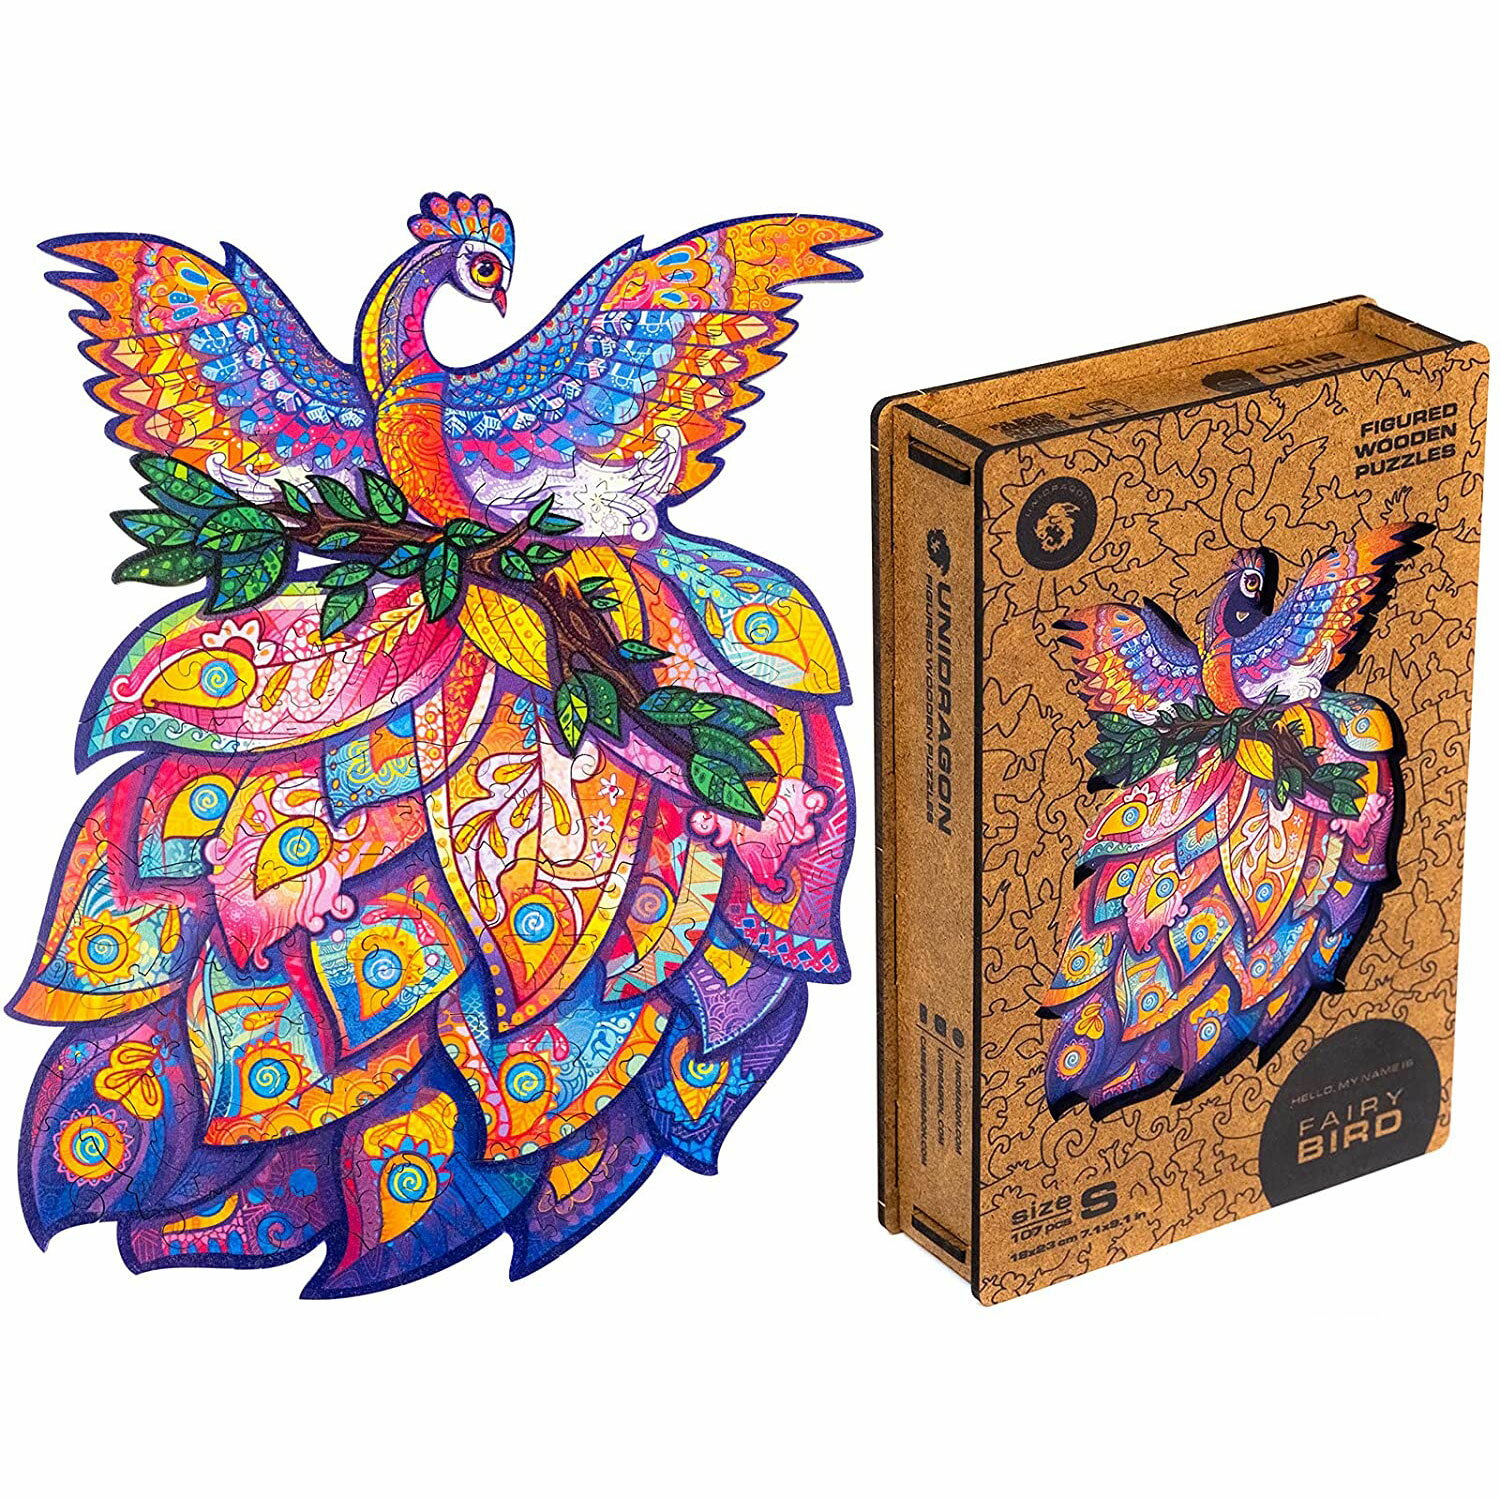 15 | UNIDRAGON ユニドラゴン フェアリー バード( 妖精の鳥) Sサイズ 107 ピース木製フィギュアパズル